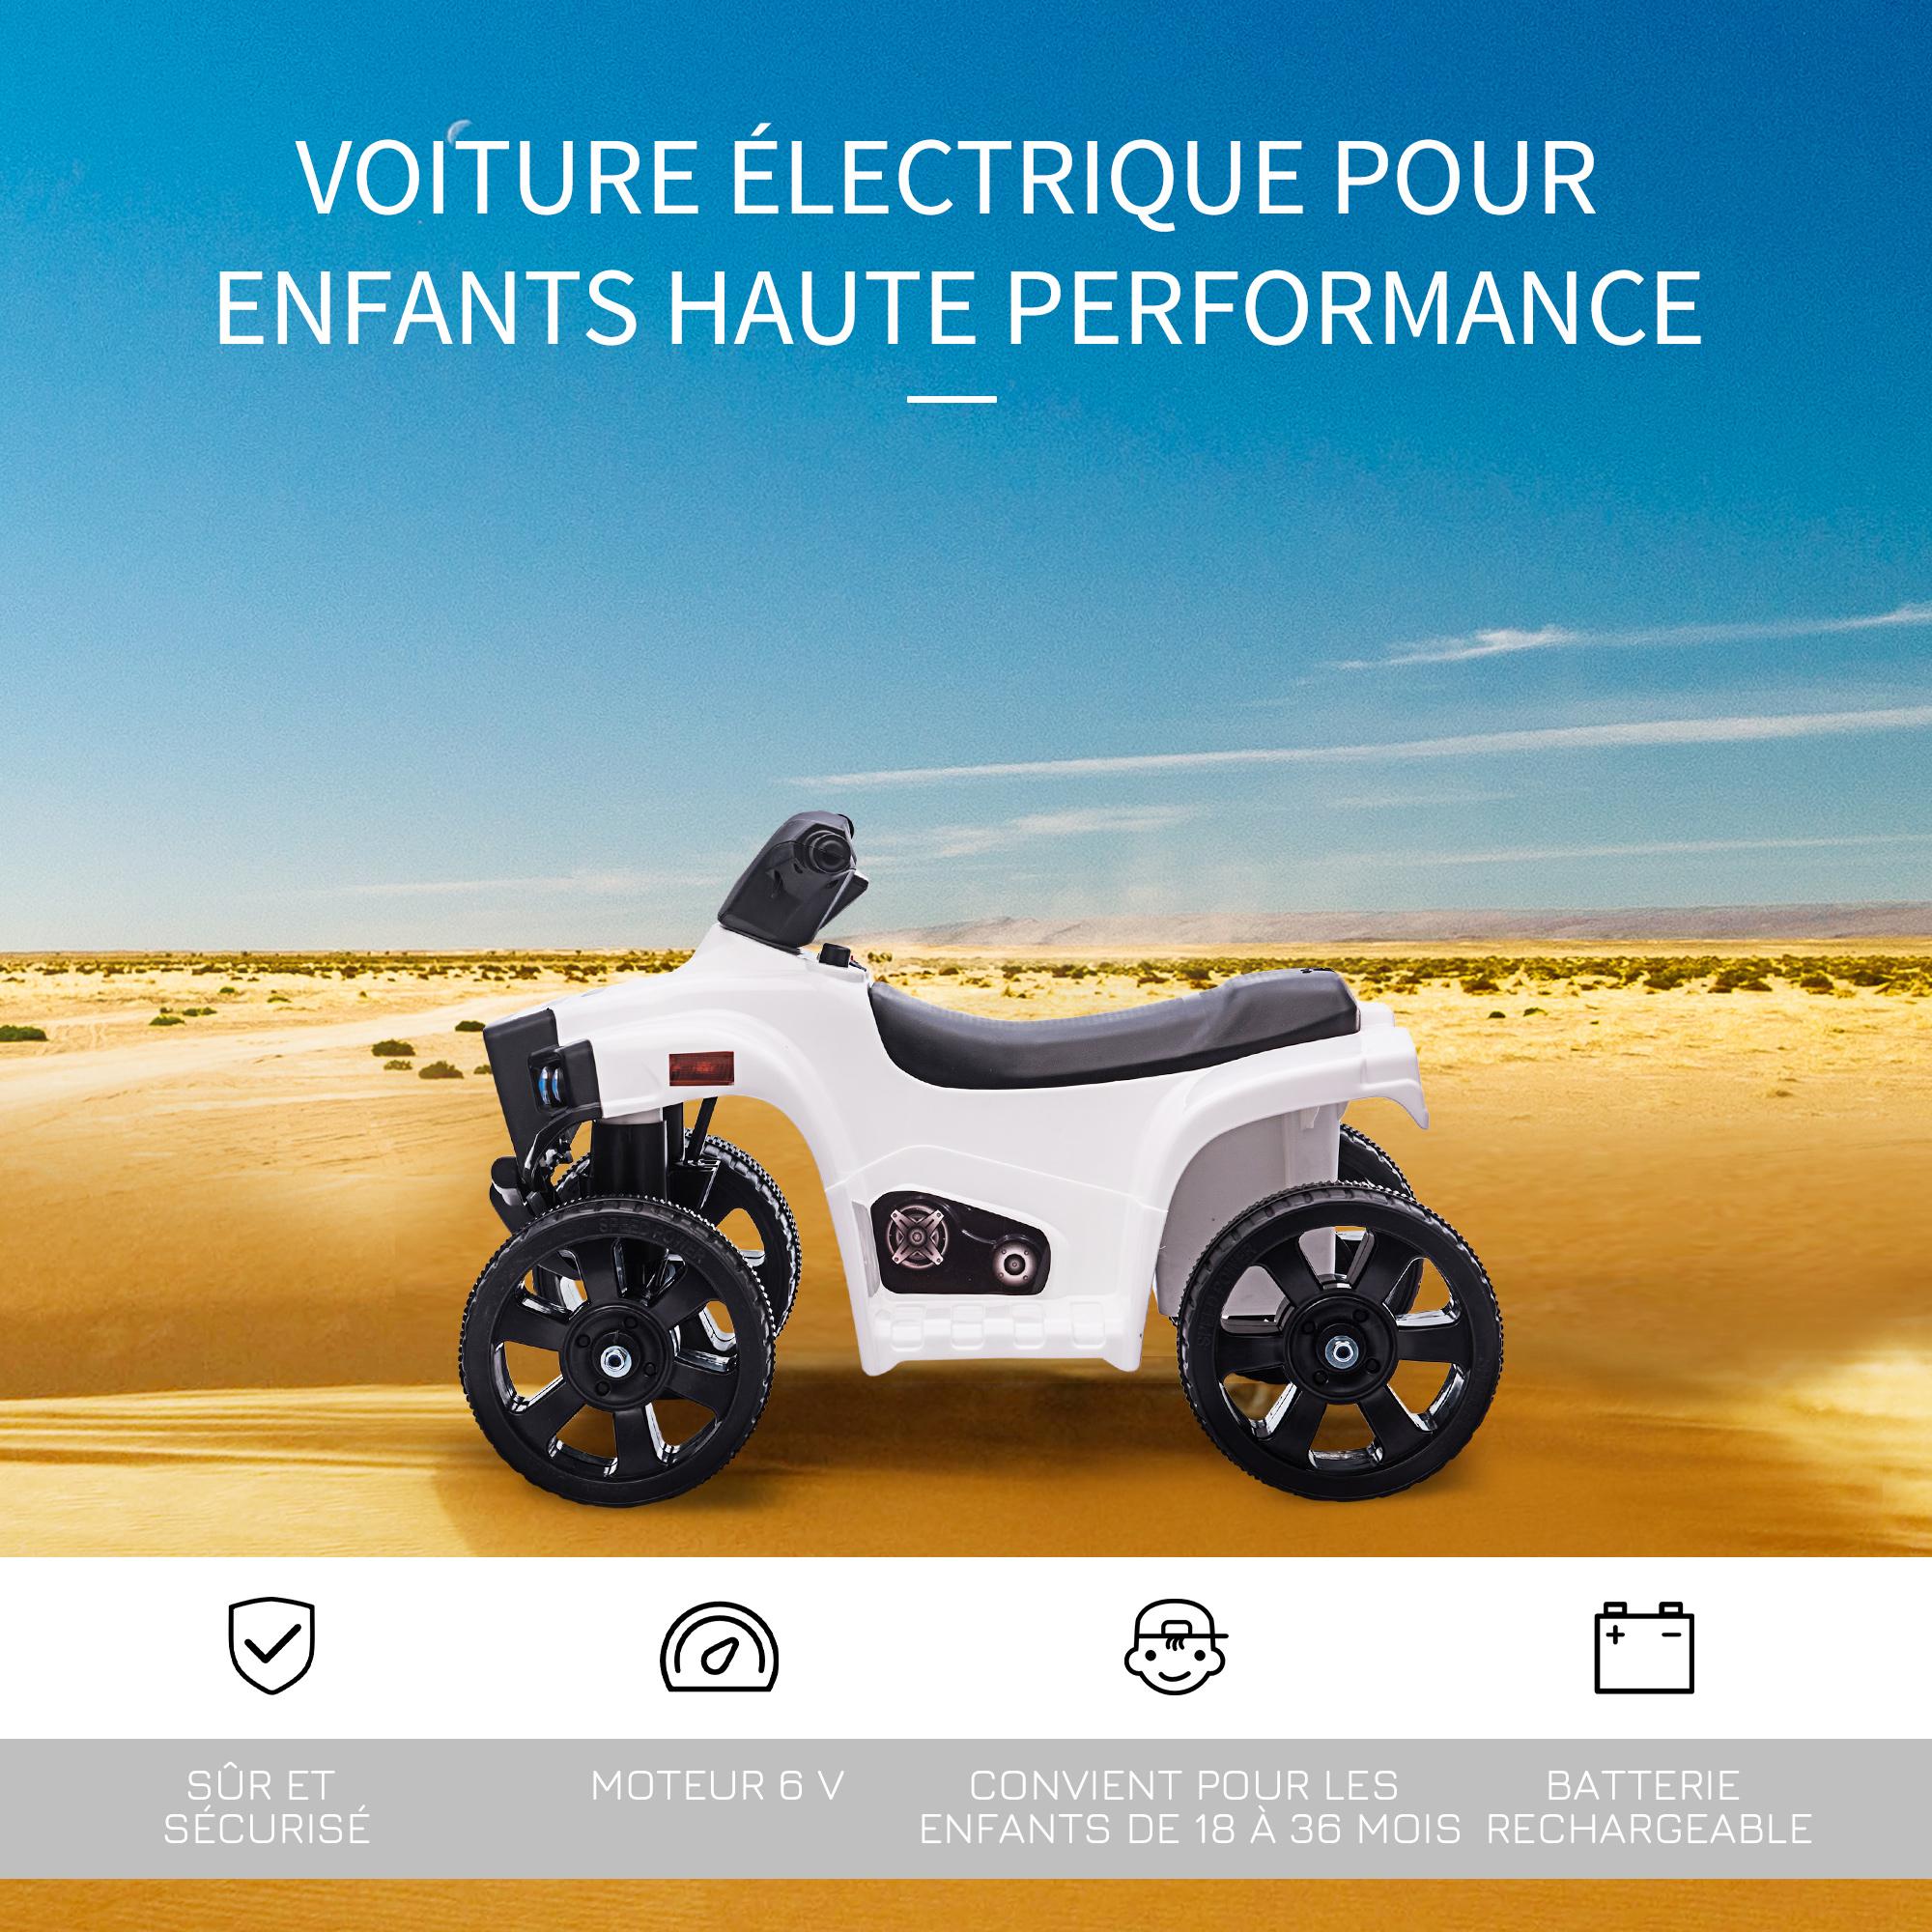 Voiture 4x4 quad buggy électrique enfant 18-36 mois 6 V 3 Km/h max. effet lumineux sonores métal PP blanc noir